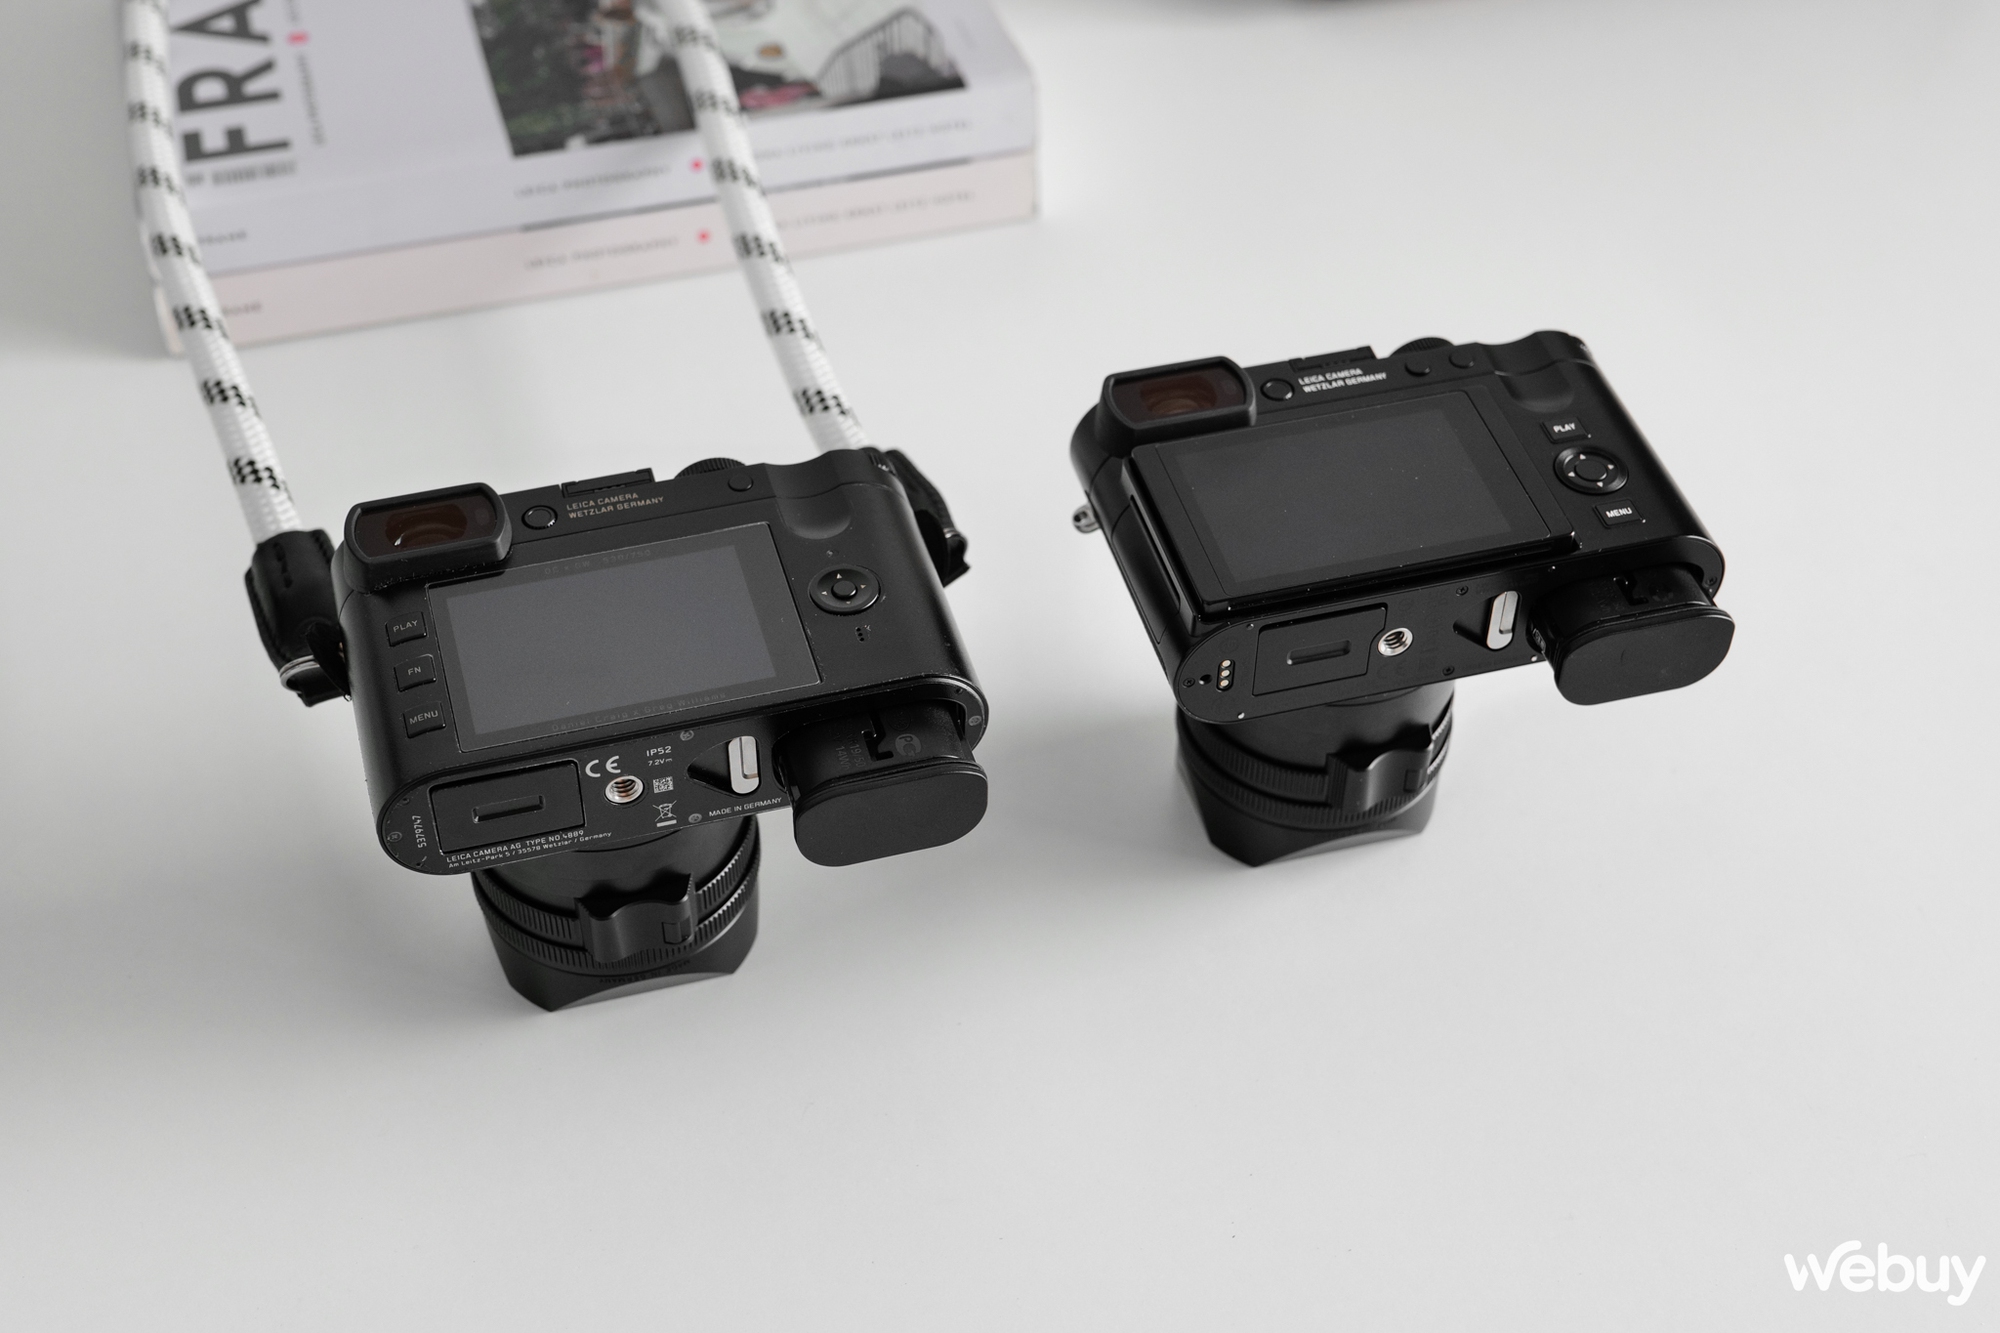 Trải nghiệm máy ảnh Leica Q3: Bước ra khỏi vùng an toàn - Ảnh 6.